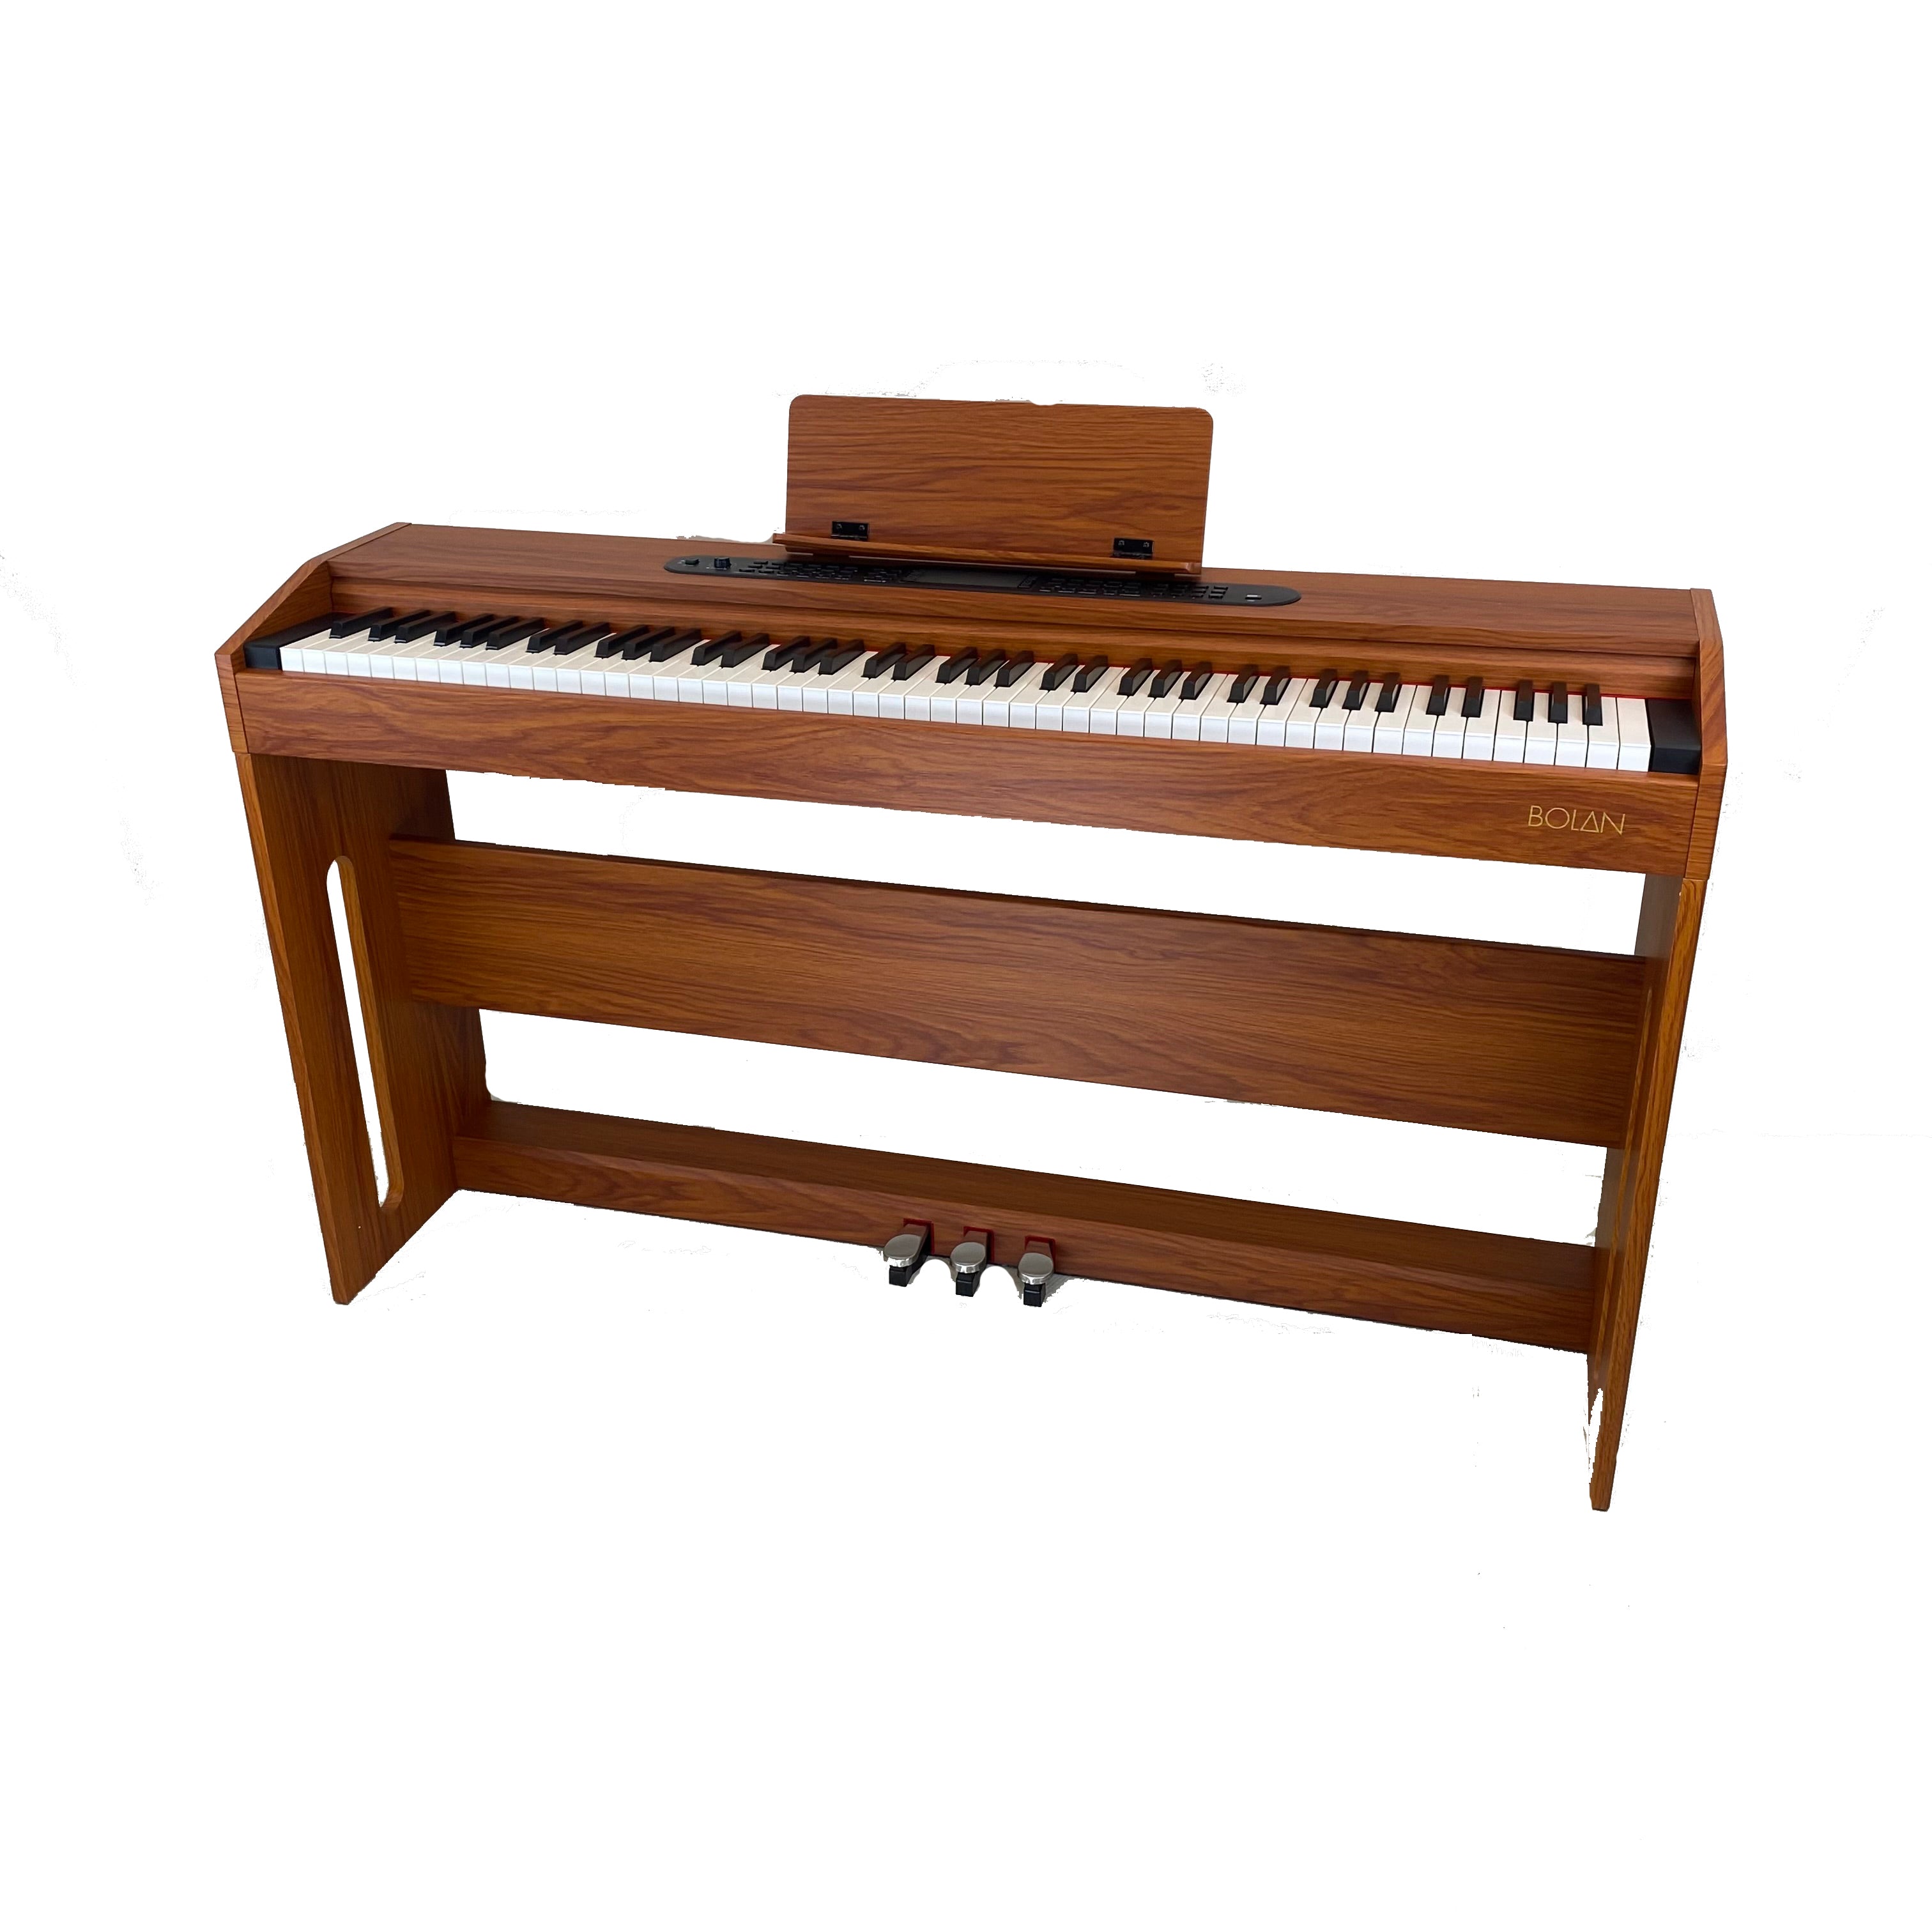 Bolan CP-1 digitale piano, bruin